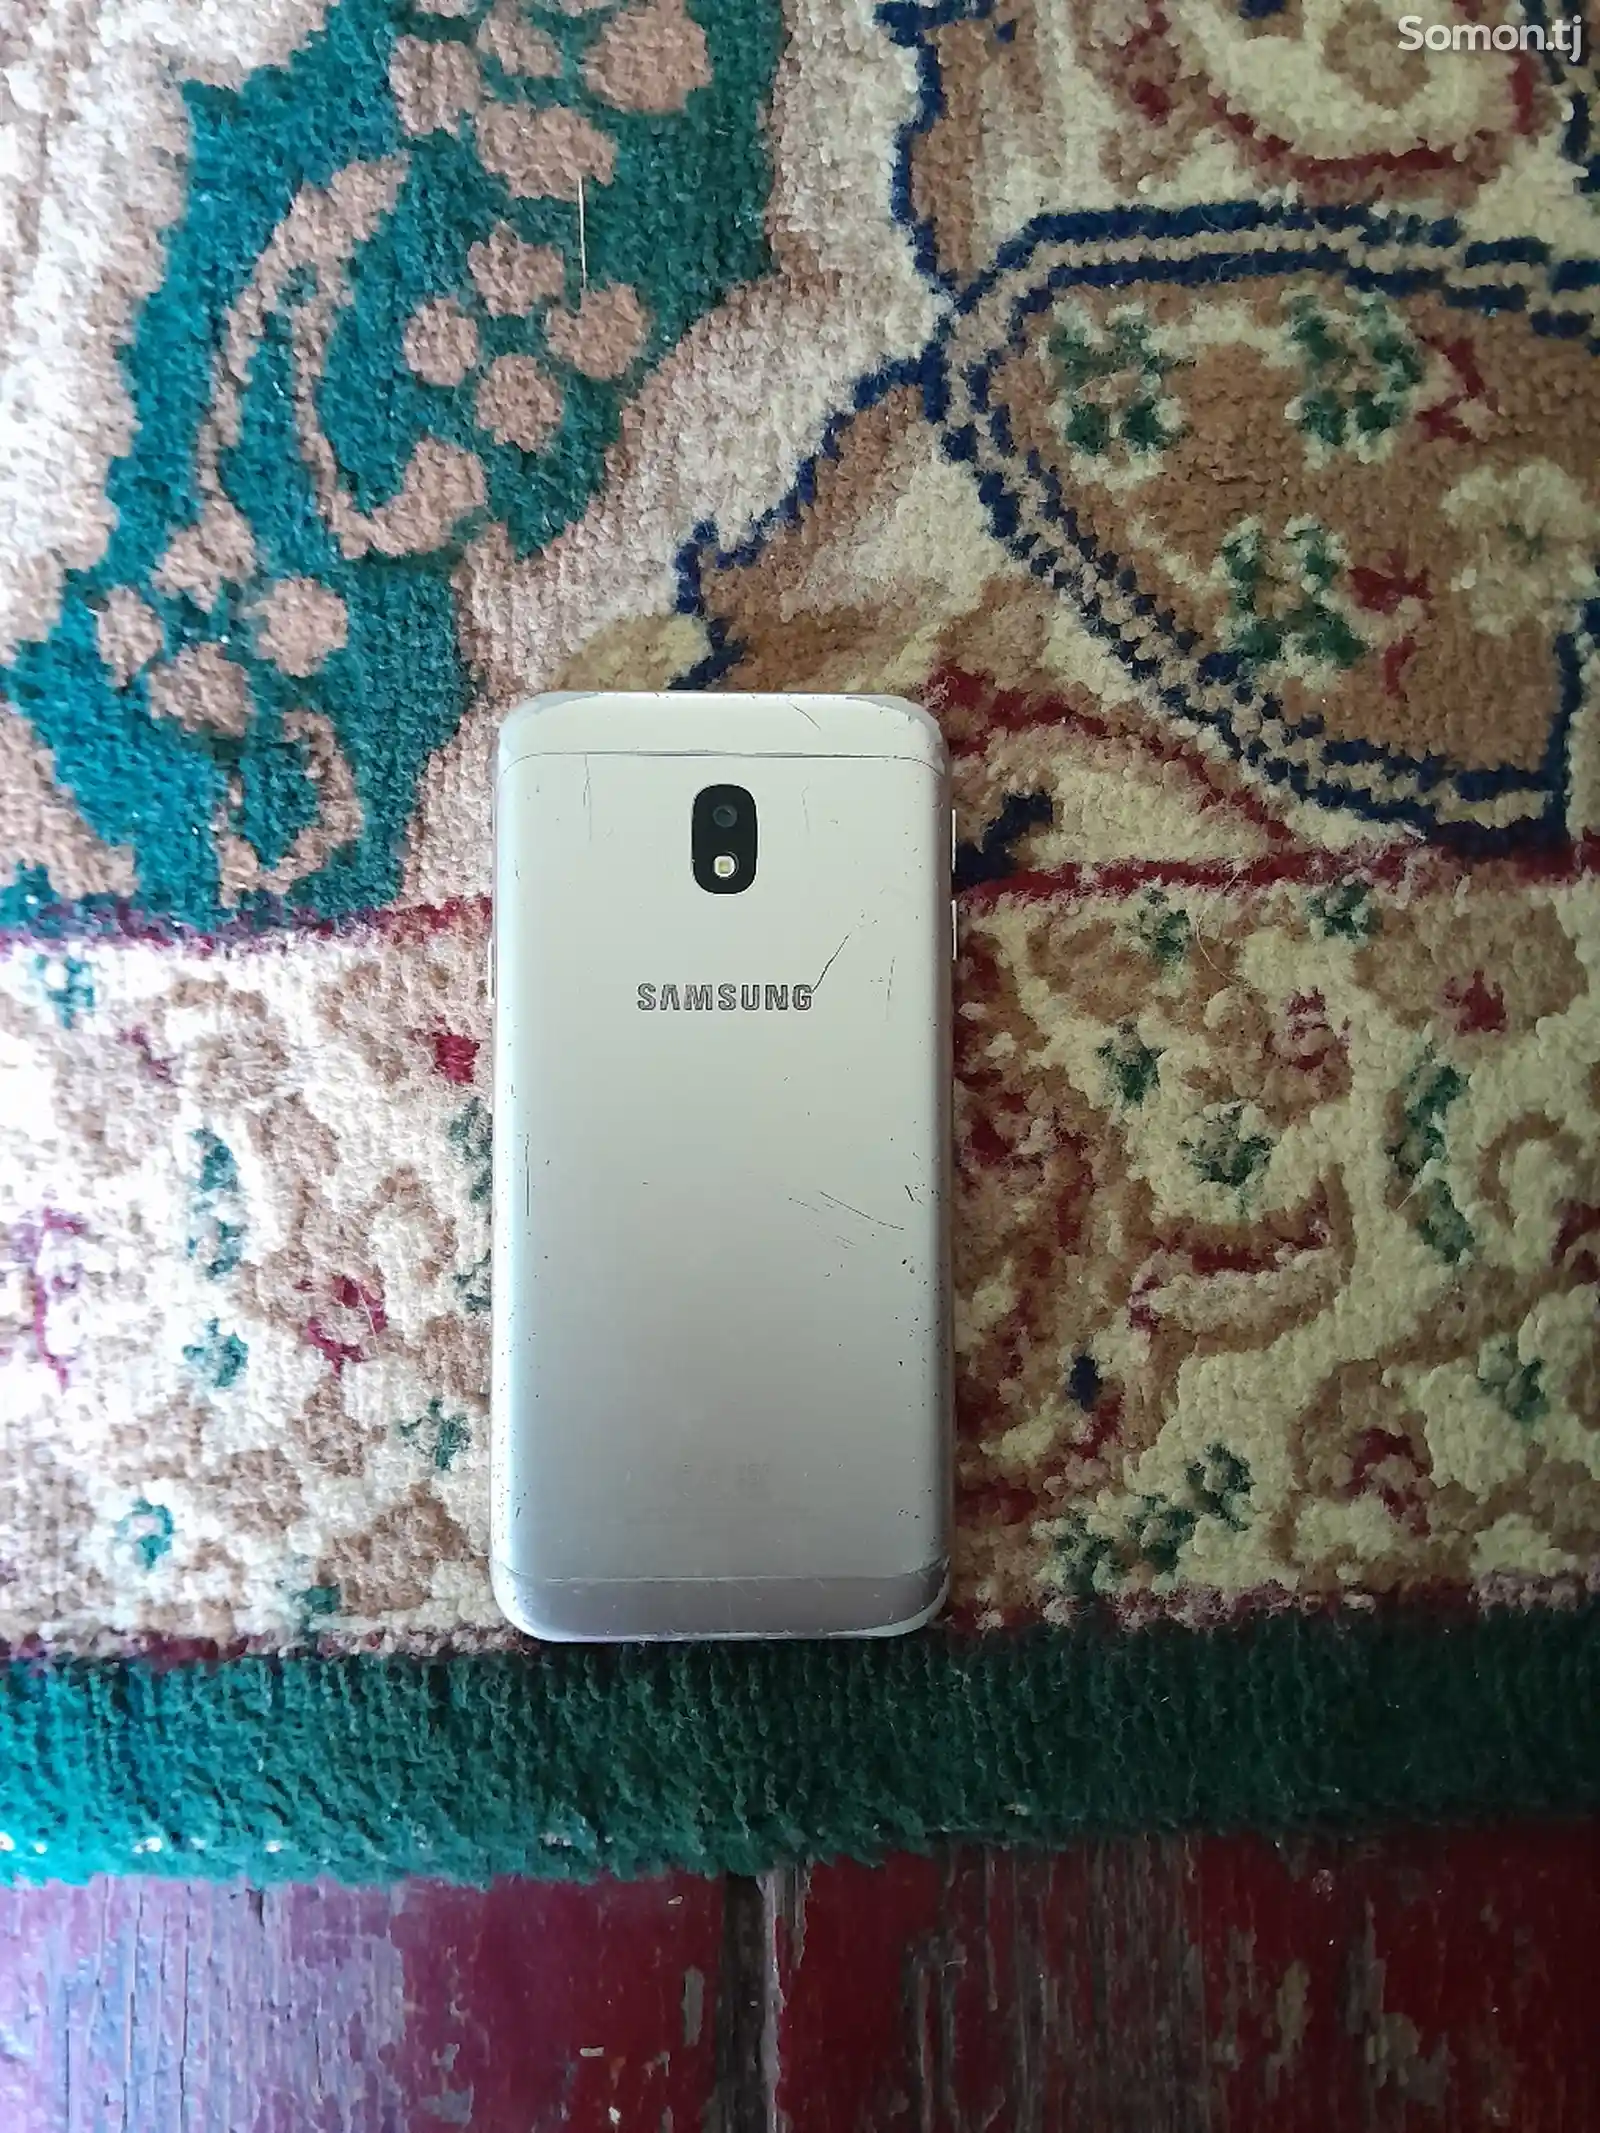 Samsung Galaxy J3-2